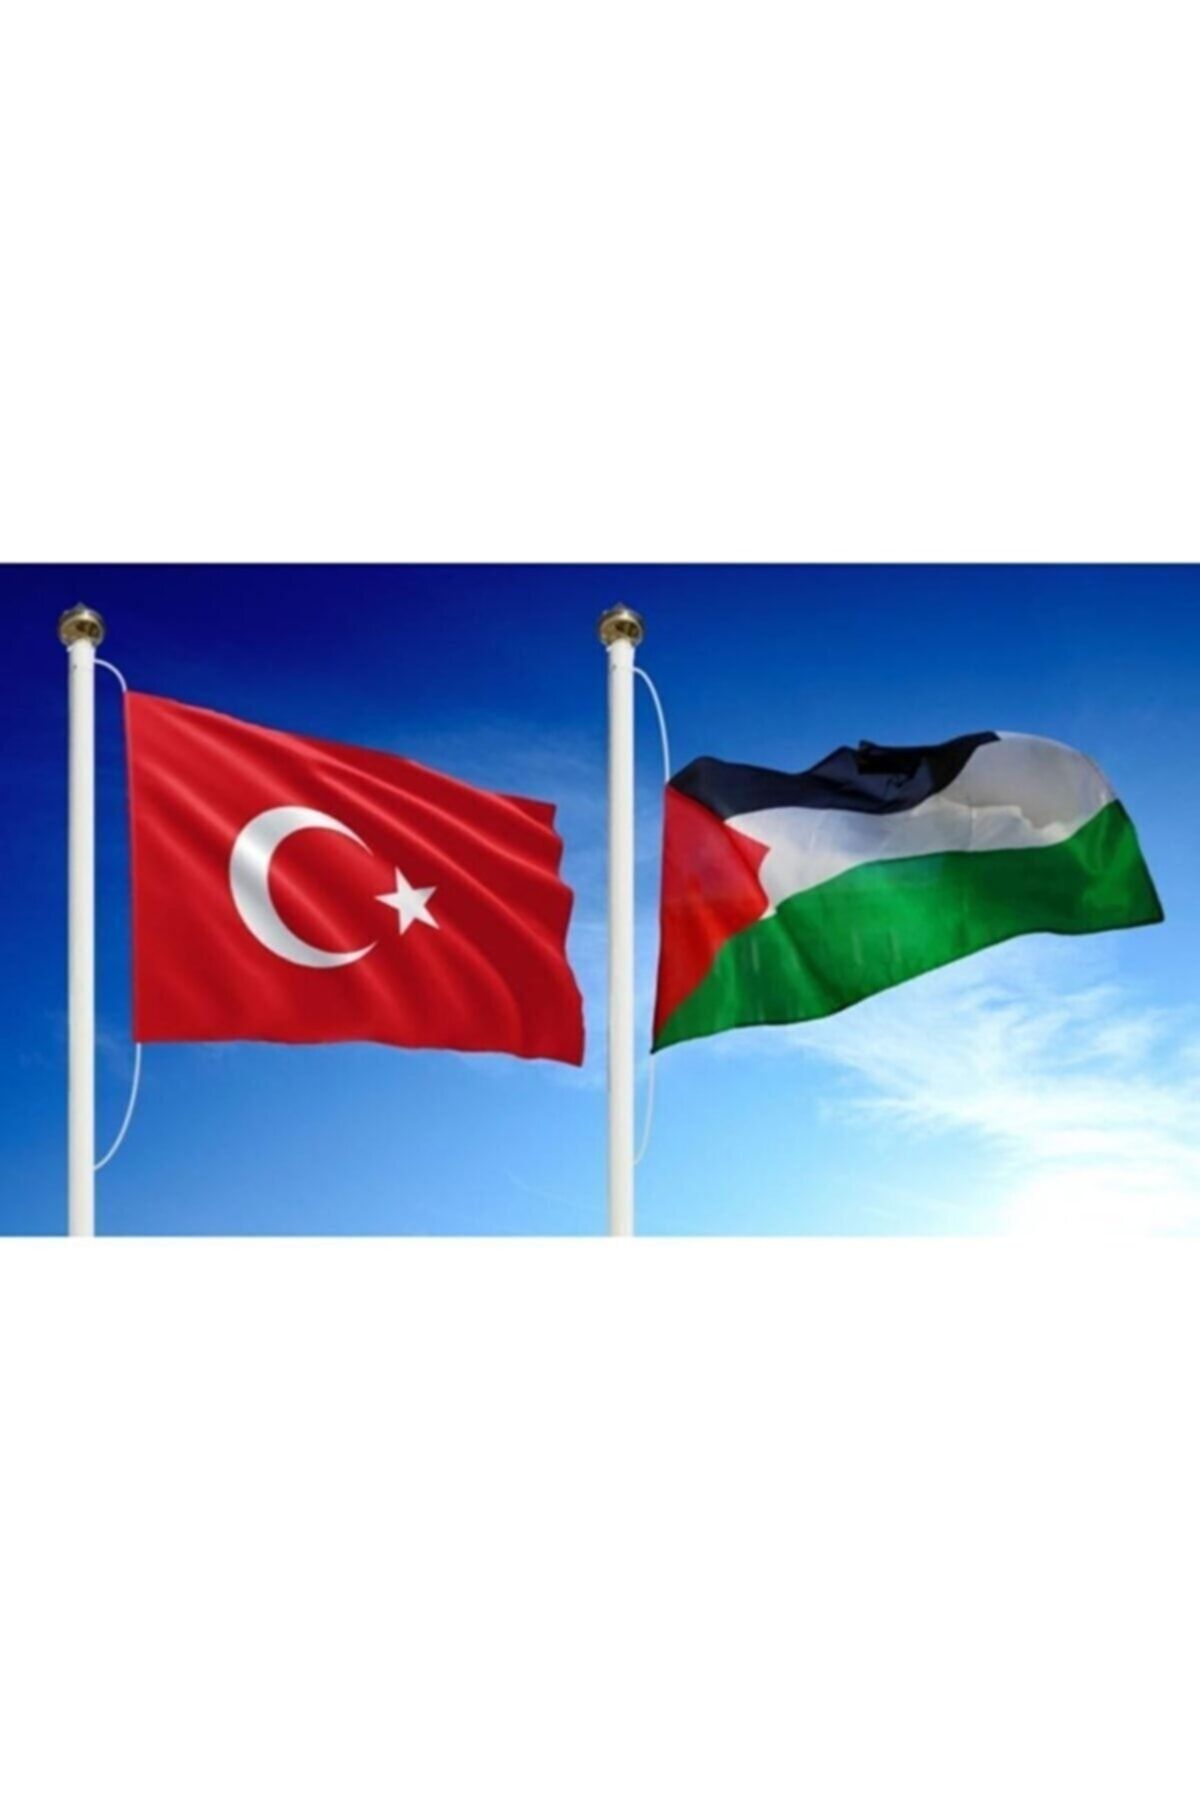 hazar bayrak Türk Bayrağı ve Filistin Gönder Bayrağı 50x75cm